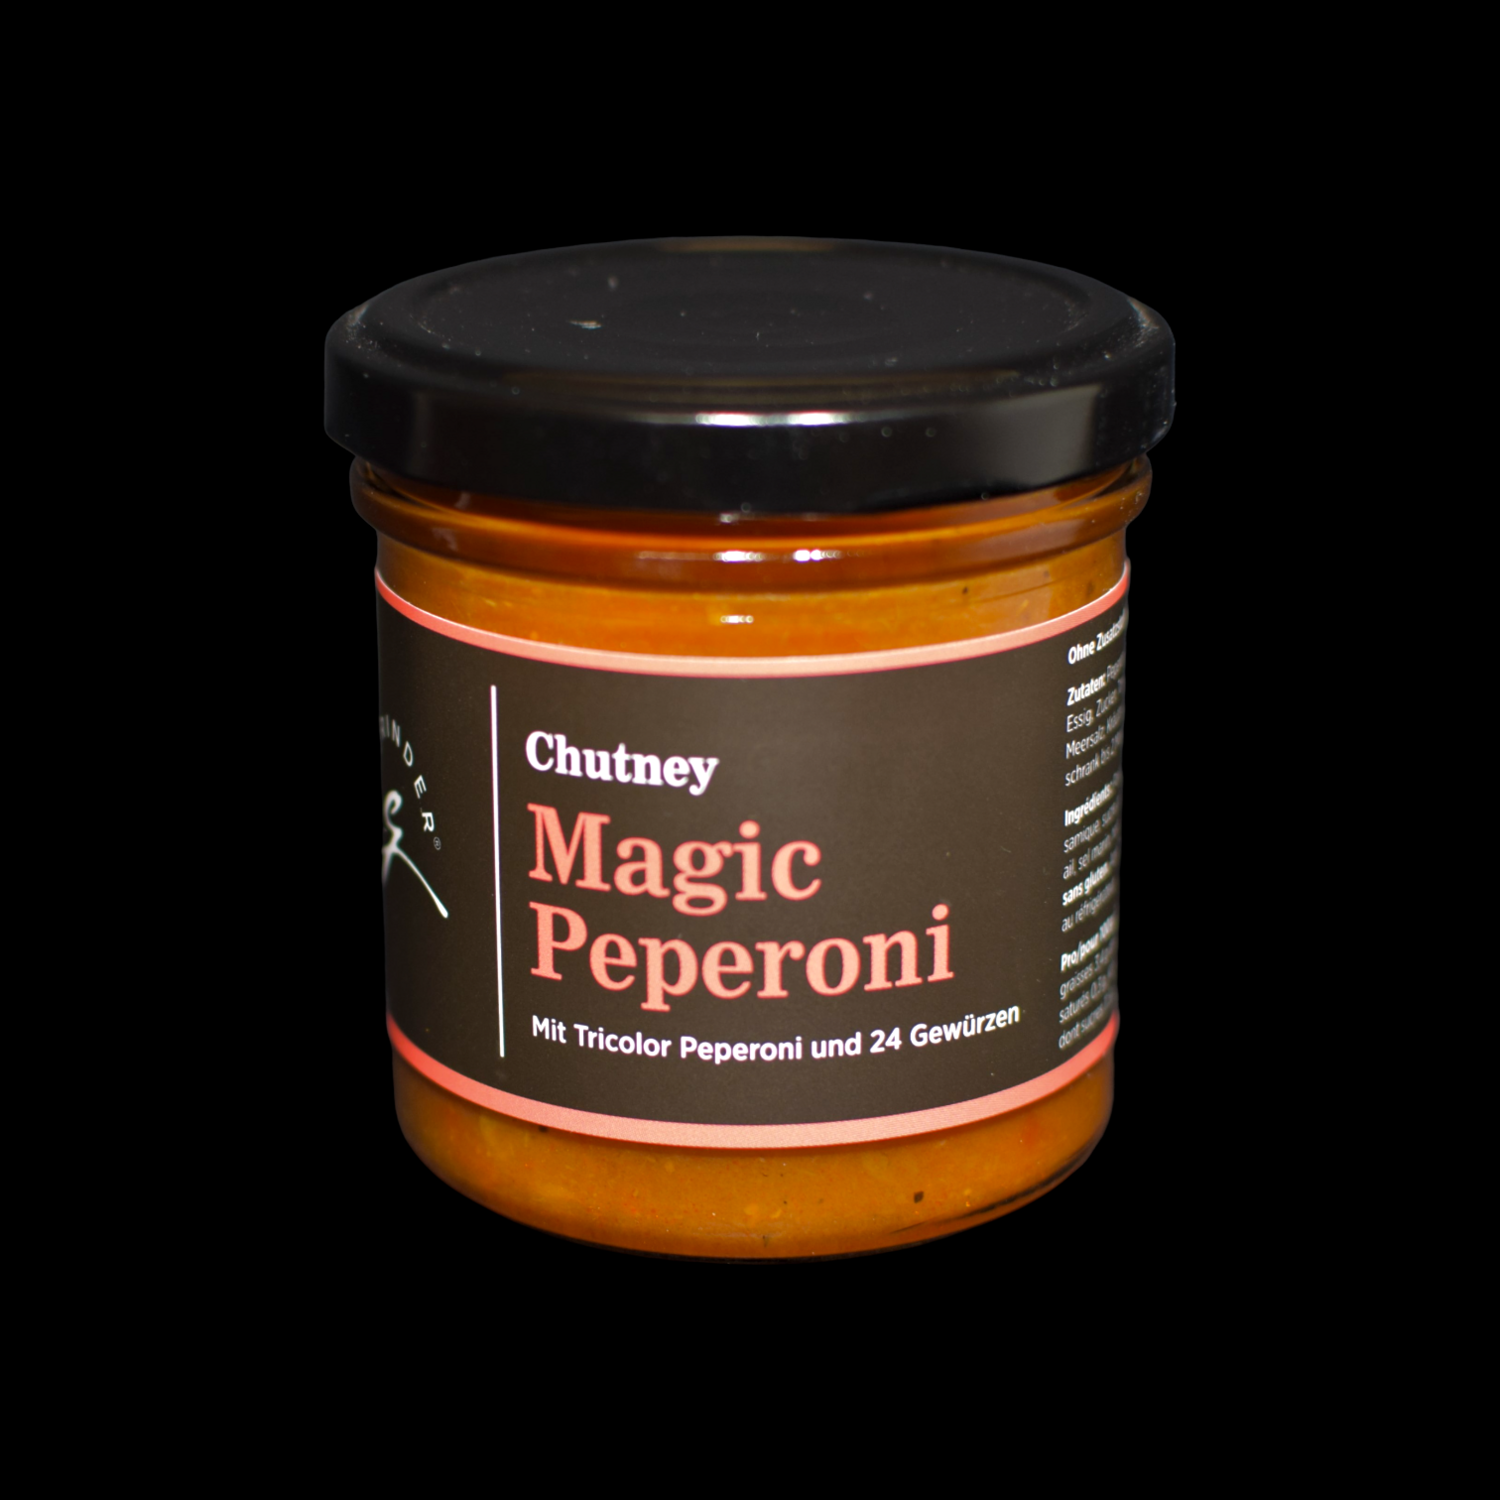 Chutney Magic Peperoni